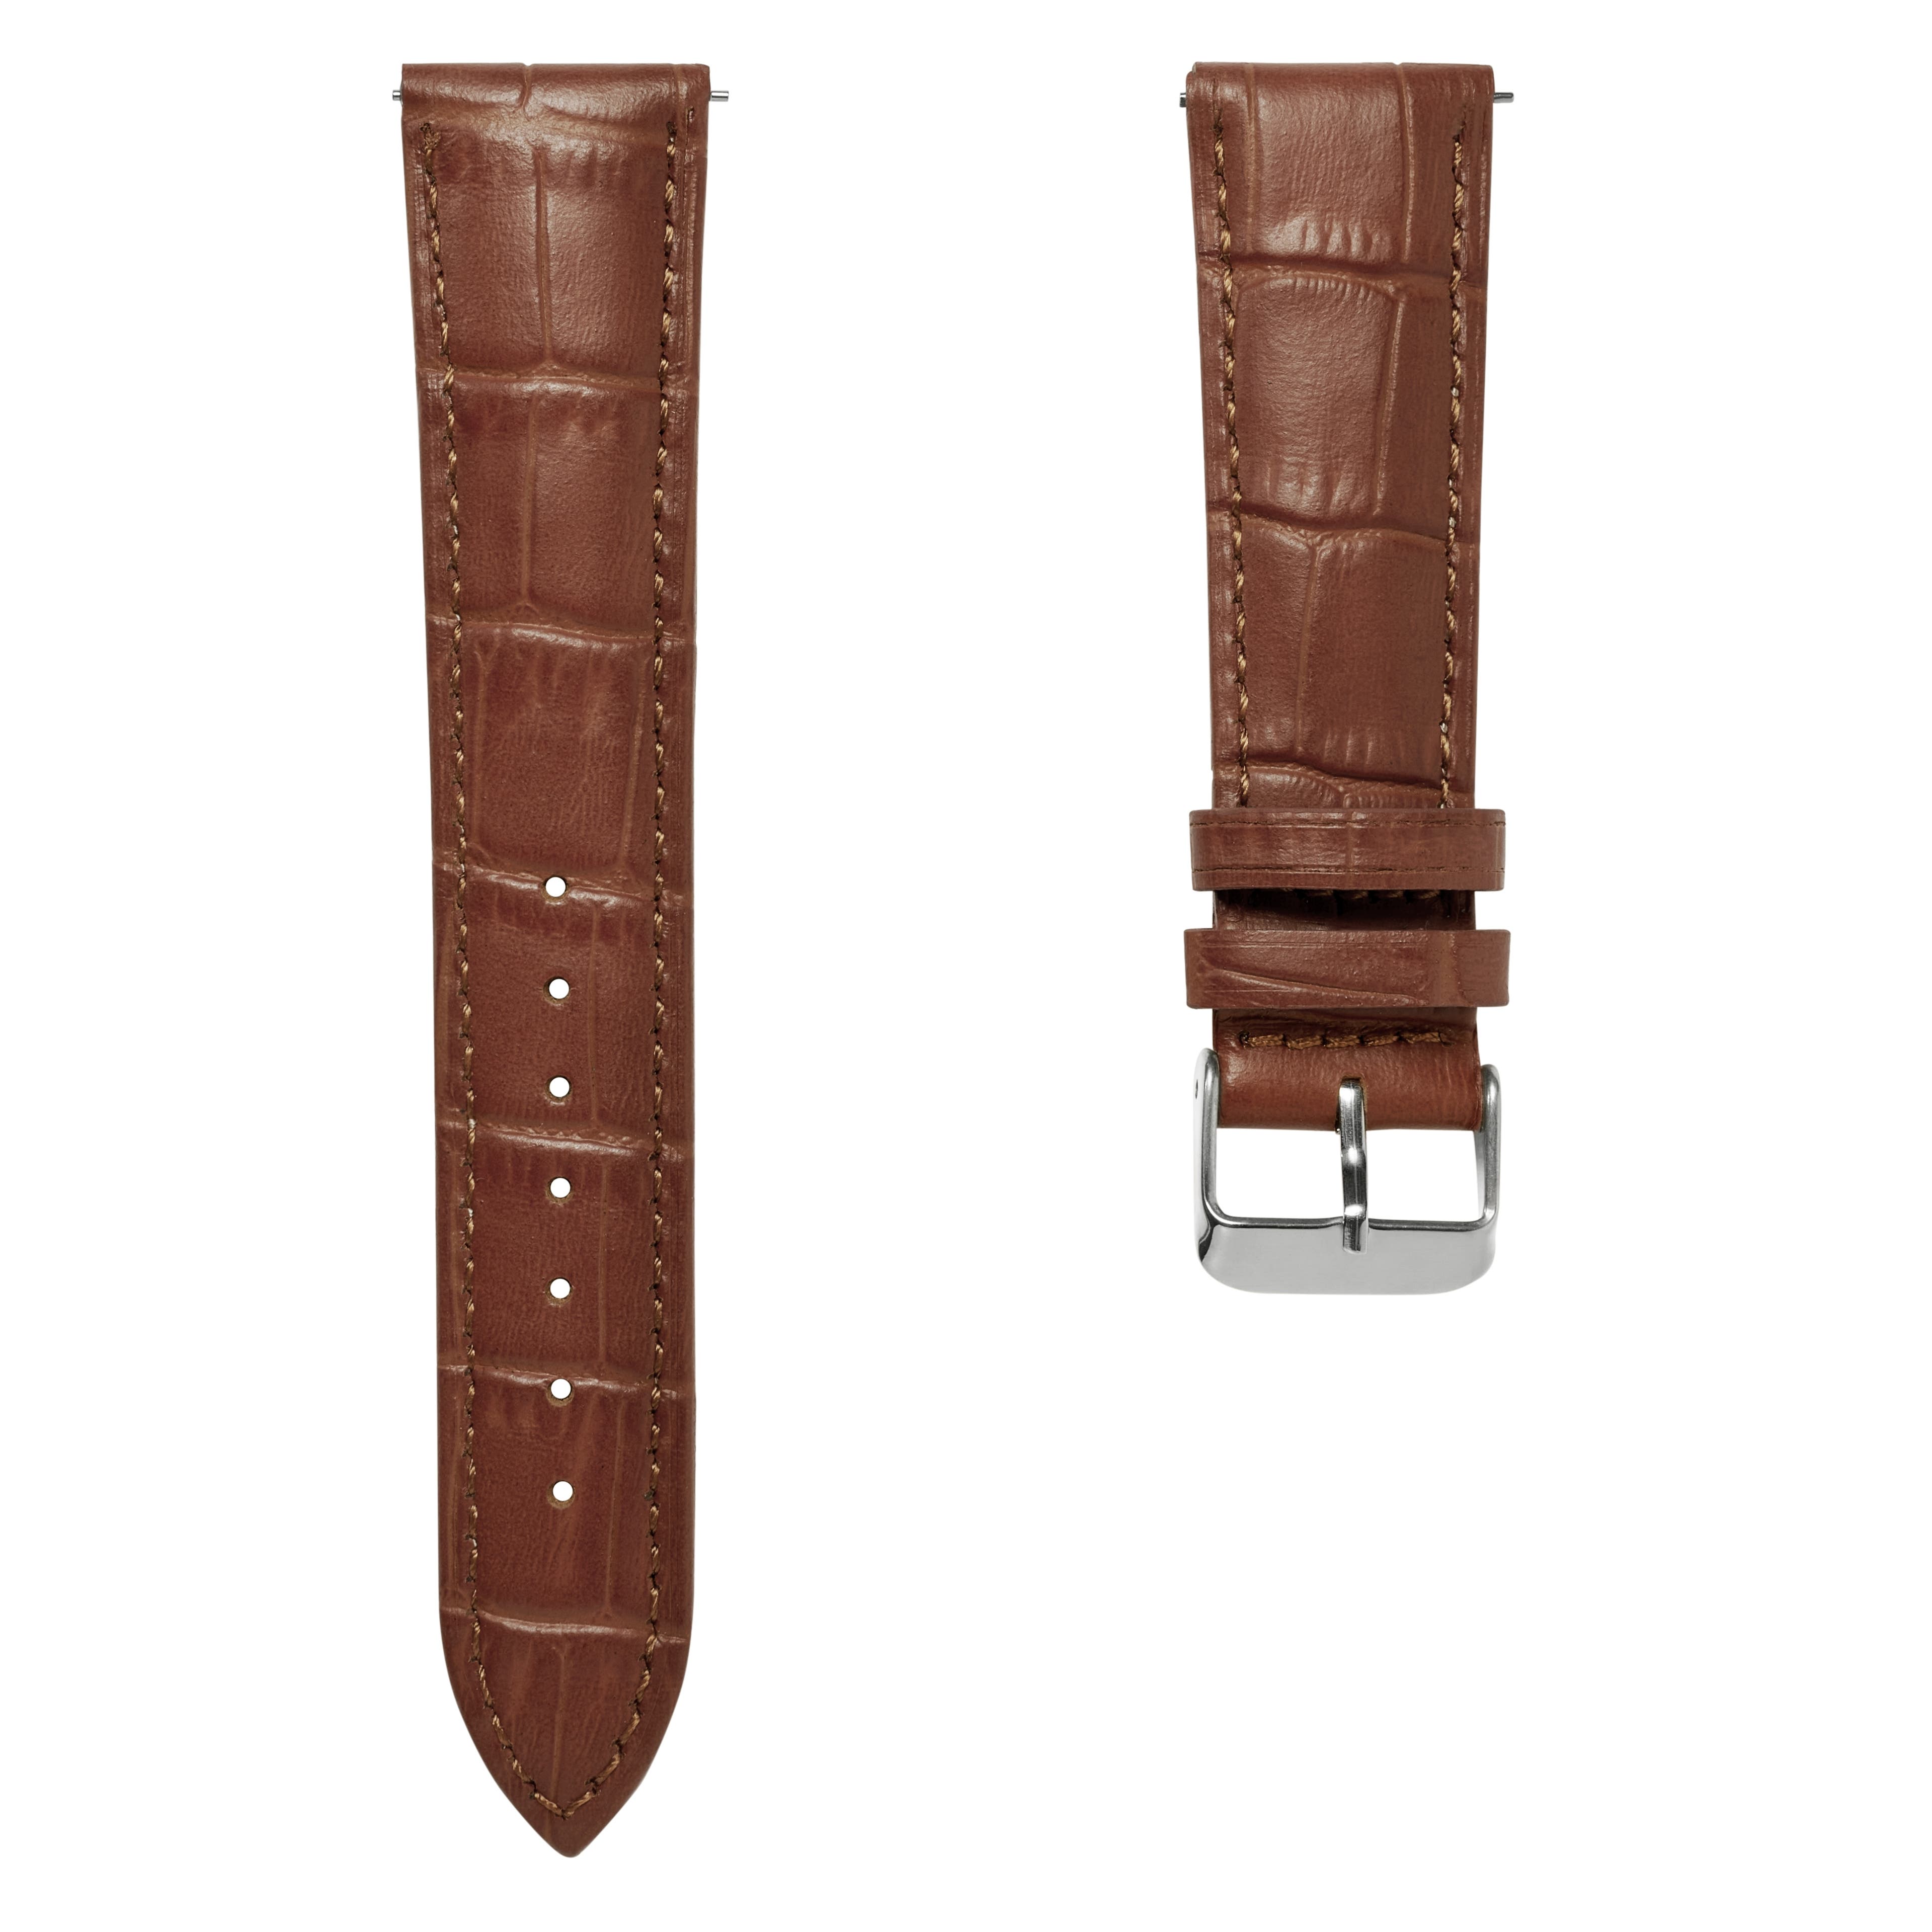 22 mm horlogeband van bruin leer met krokodillenmotief en zilverkleurige gesp – Snelsluiting